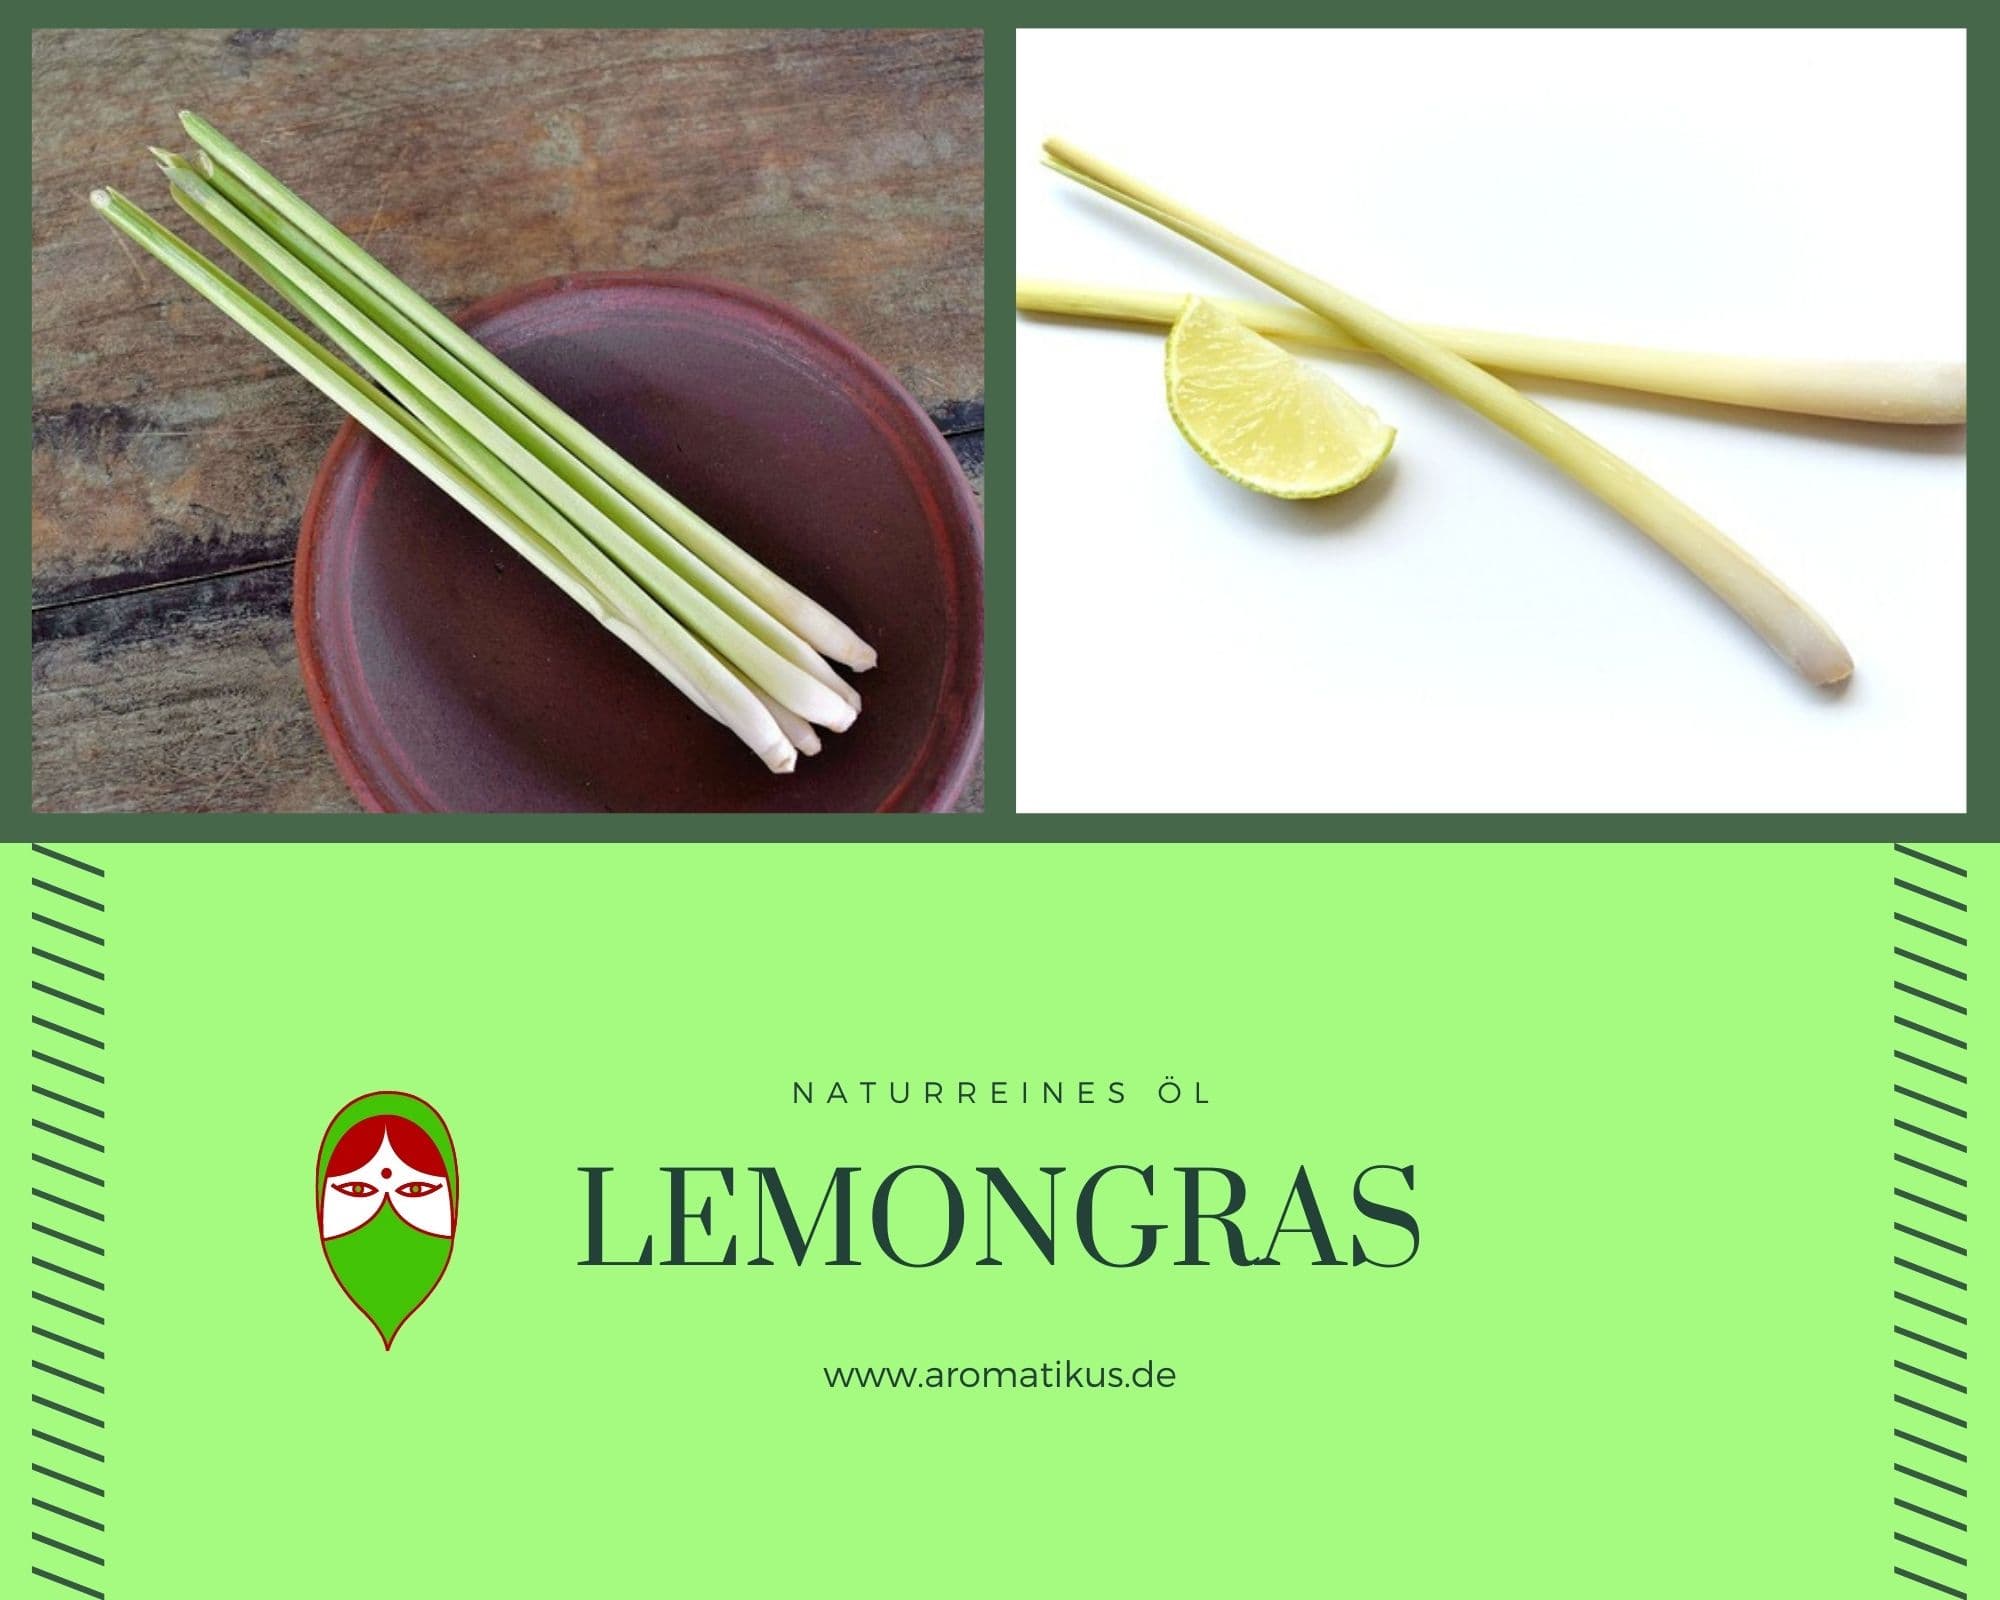 Ätherisches Duftöl Lemongras als naturreines Öl von Aromatikus